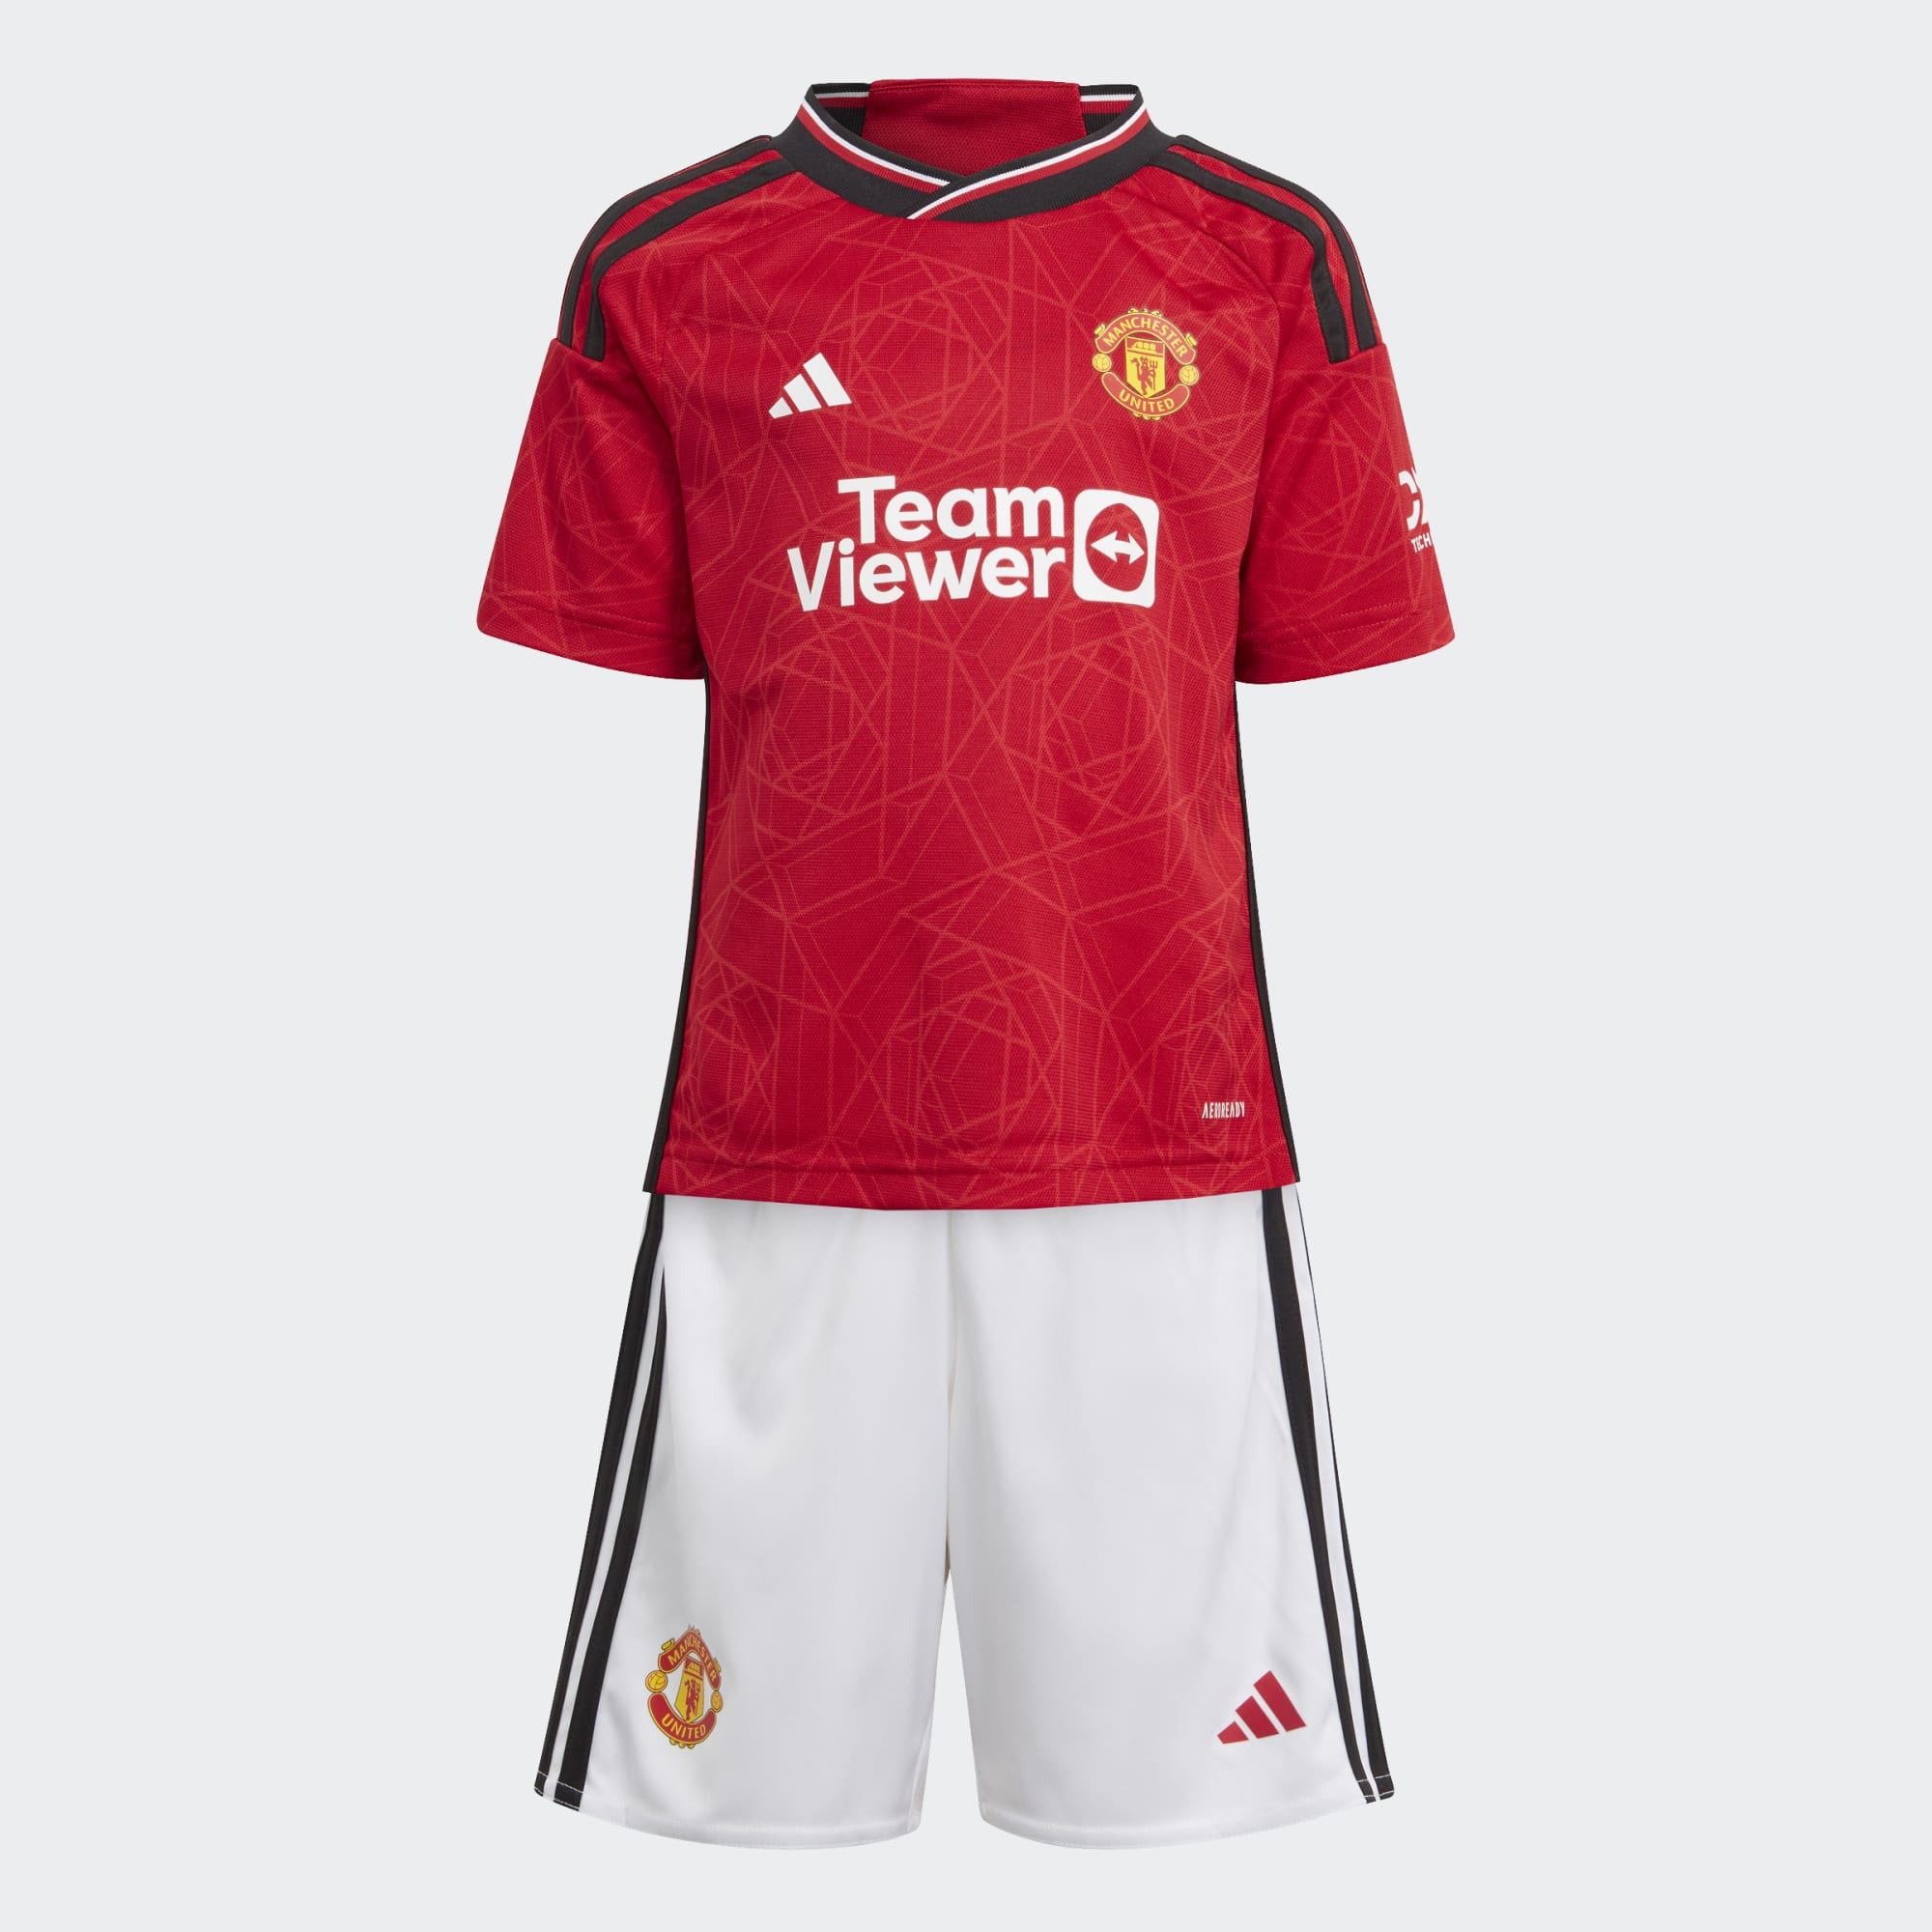 Manchester United barna sett - blusa og shorts